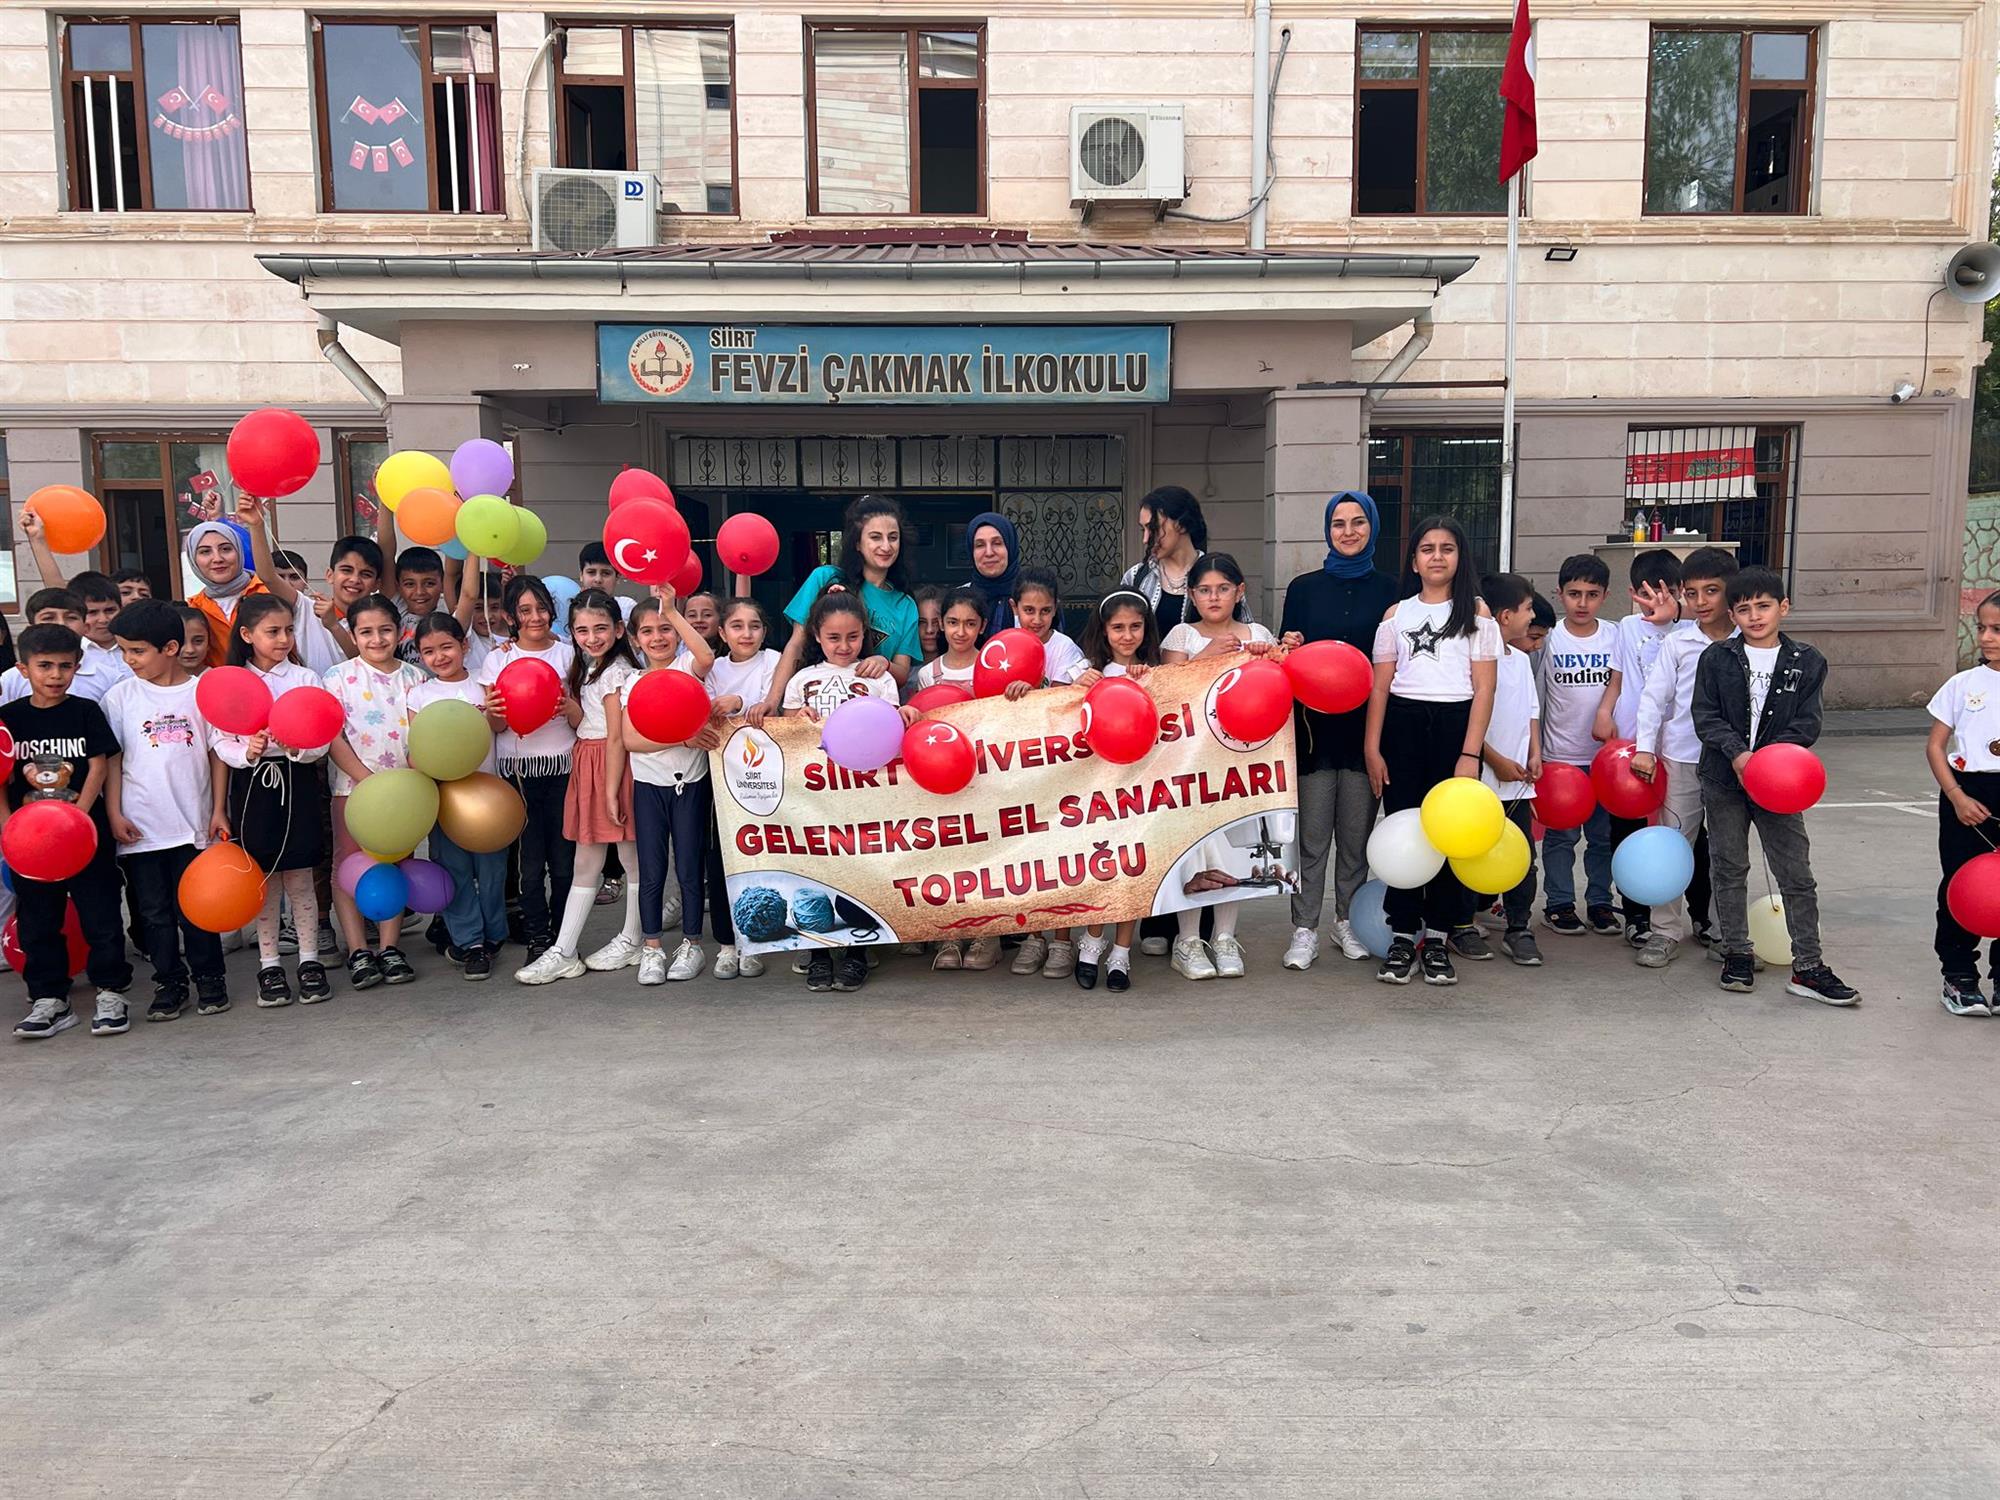 Geleneksel El Sanatları Topluluğu, Fevzi Çakmak İlkokulunda Ebru etkinliğini düzenledi.